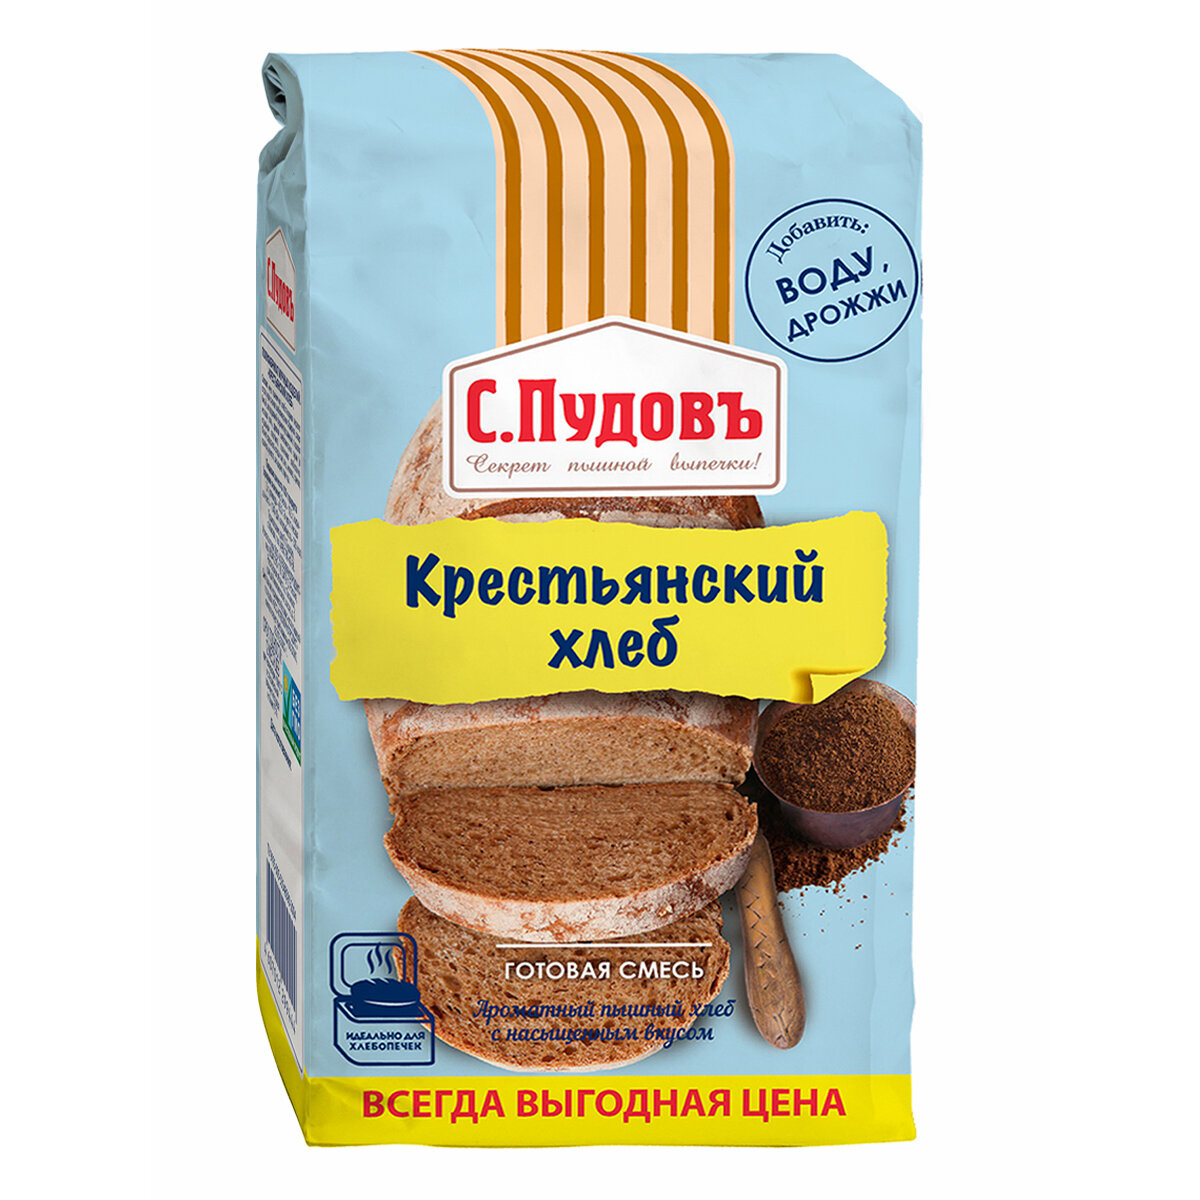 Готовая хлебная смесь Крестьянский хлеб, С. Пудовъ, 0.5 кг